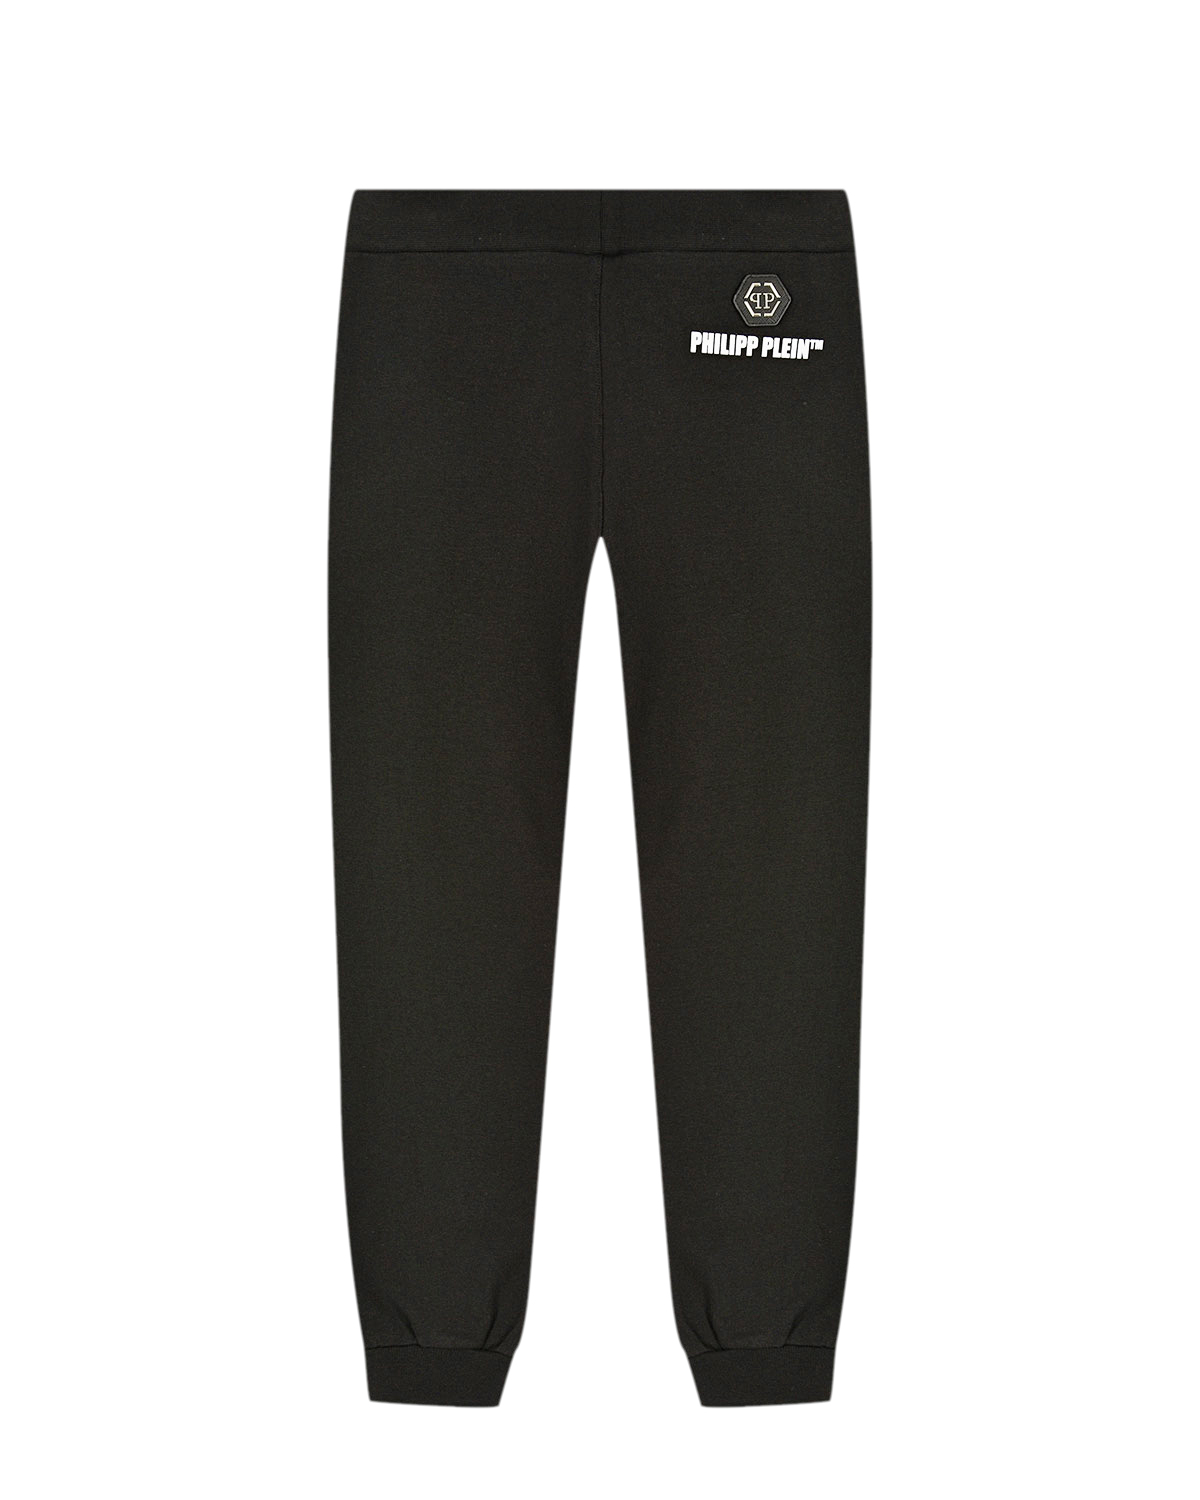 Черные спортивные брюки с принтом "банан" Philipp Plein детские, размер 140, цвет черный - фото 2